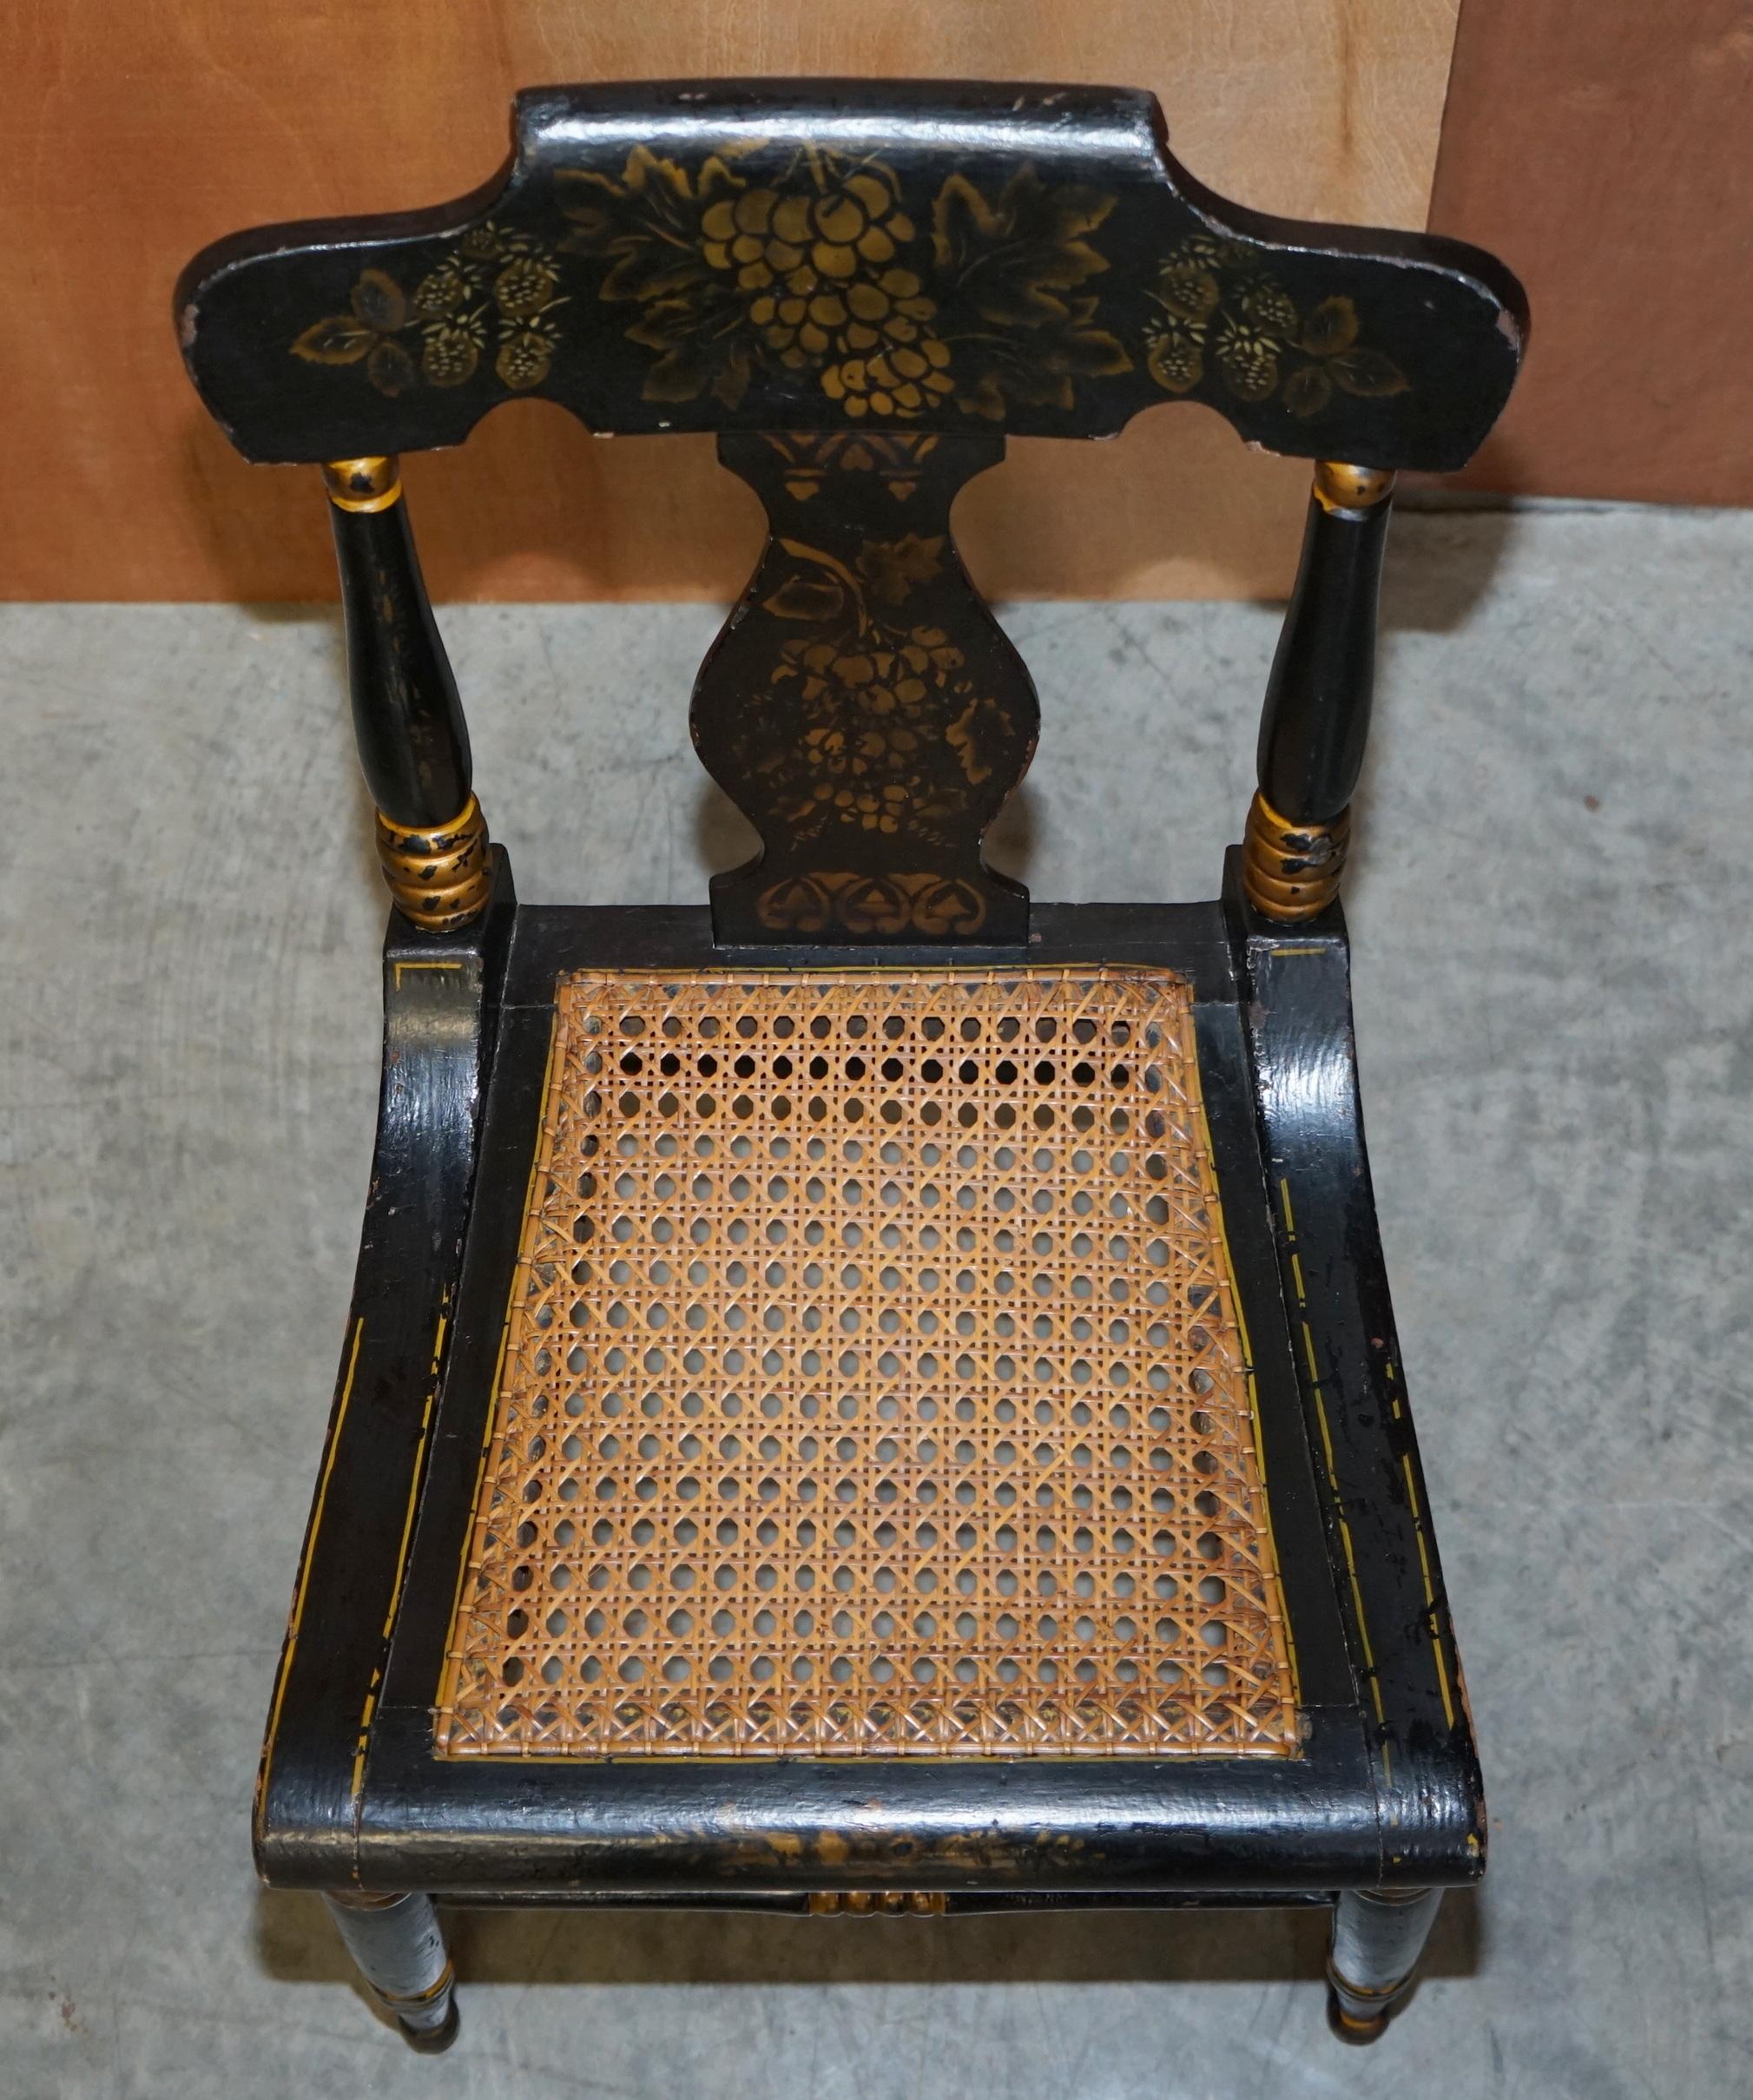 Wir freuen uns, diesen atemberaubenden originalen Baltimore Beistellstuhl aus dem Jahr 1825, der mit Ebenholz und Gold vergoldet ist, zum Verkauf anbieten zu können

Ein sehr sammelwürdiger und gut gemachter Beistellstuhl. Wenn Sie sich dieses